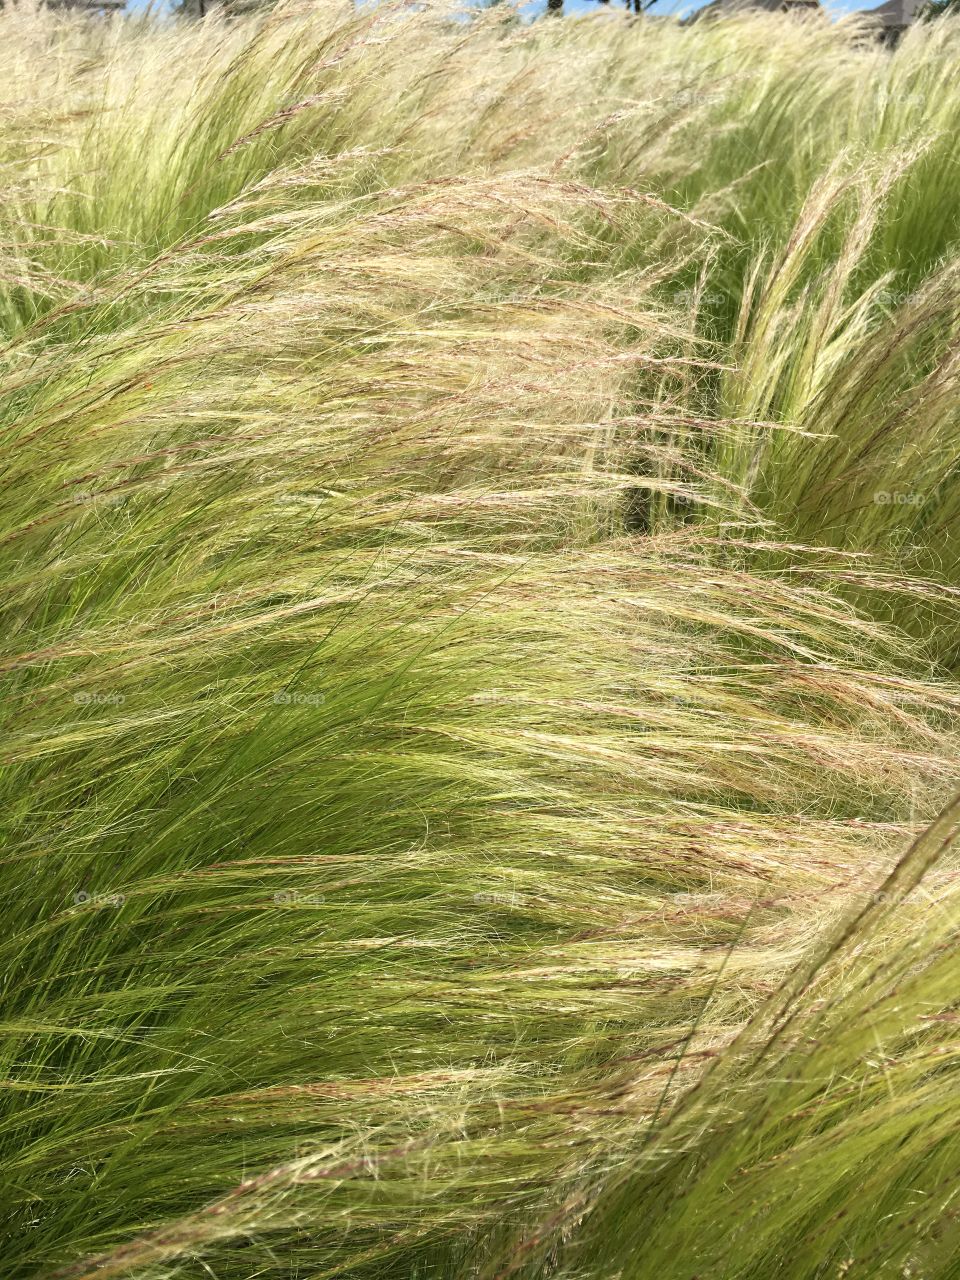 Prairie grasses